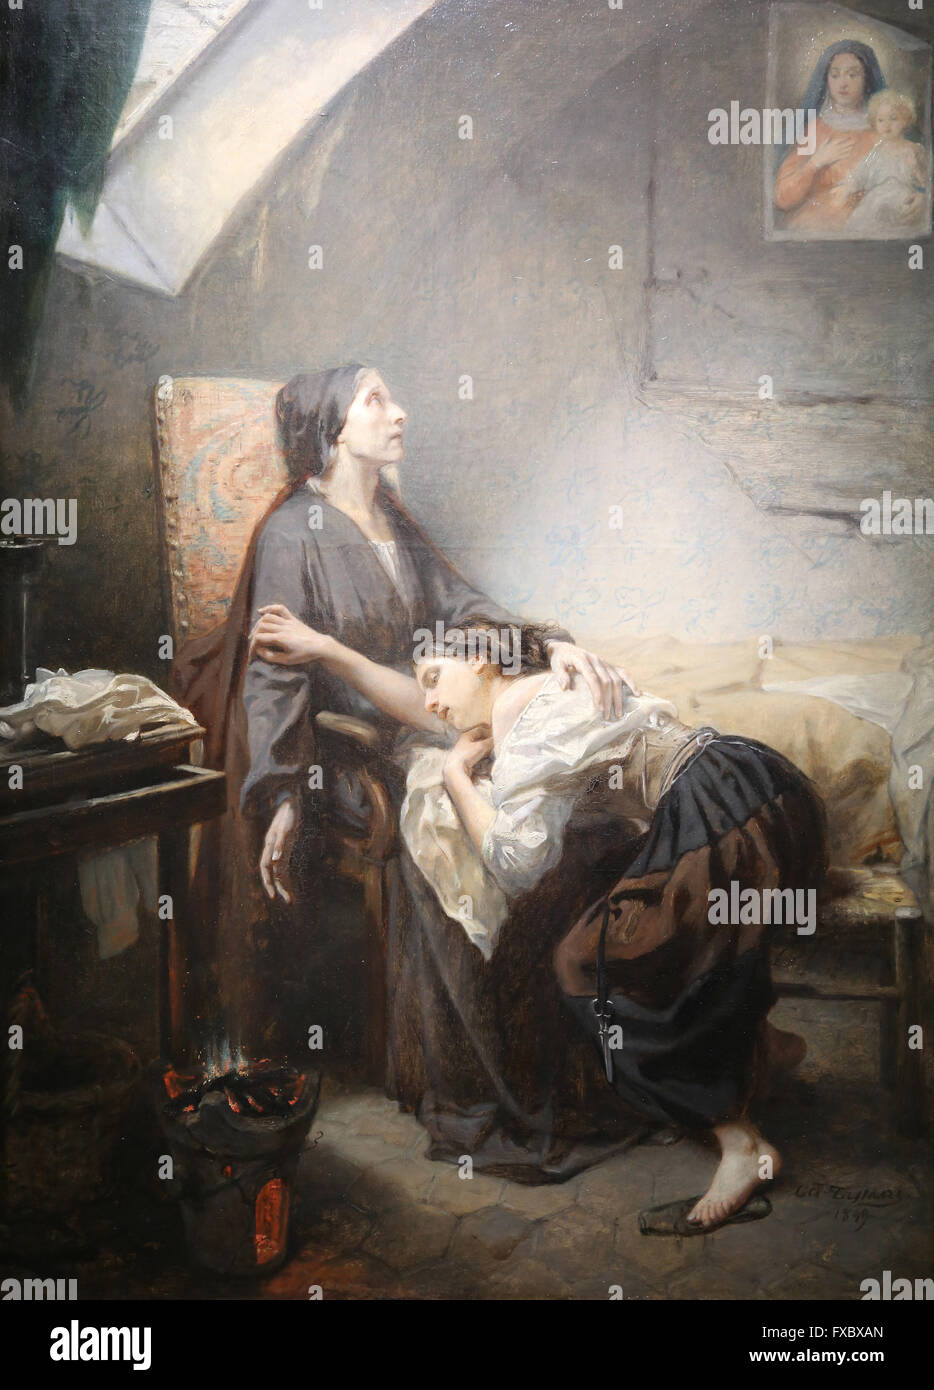 Selbstmord oder eine unglückliche Familie, 1849-1852 von Octave Tassaert (1800-1874). Öl auf Leinwand. Musée d ' Orsay. Paris. Frankreich. Stockfoto